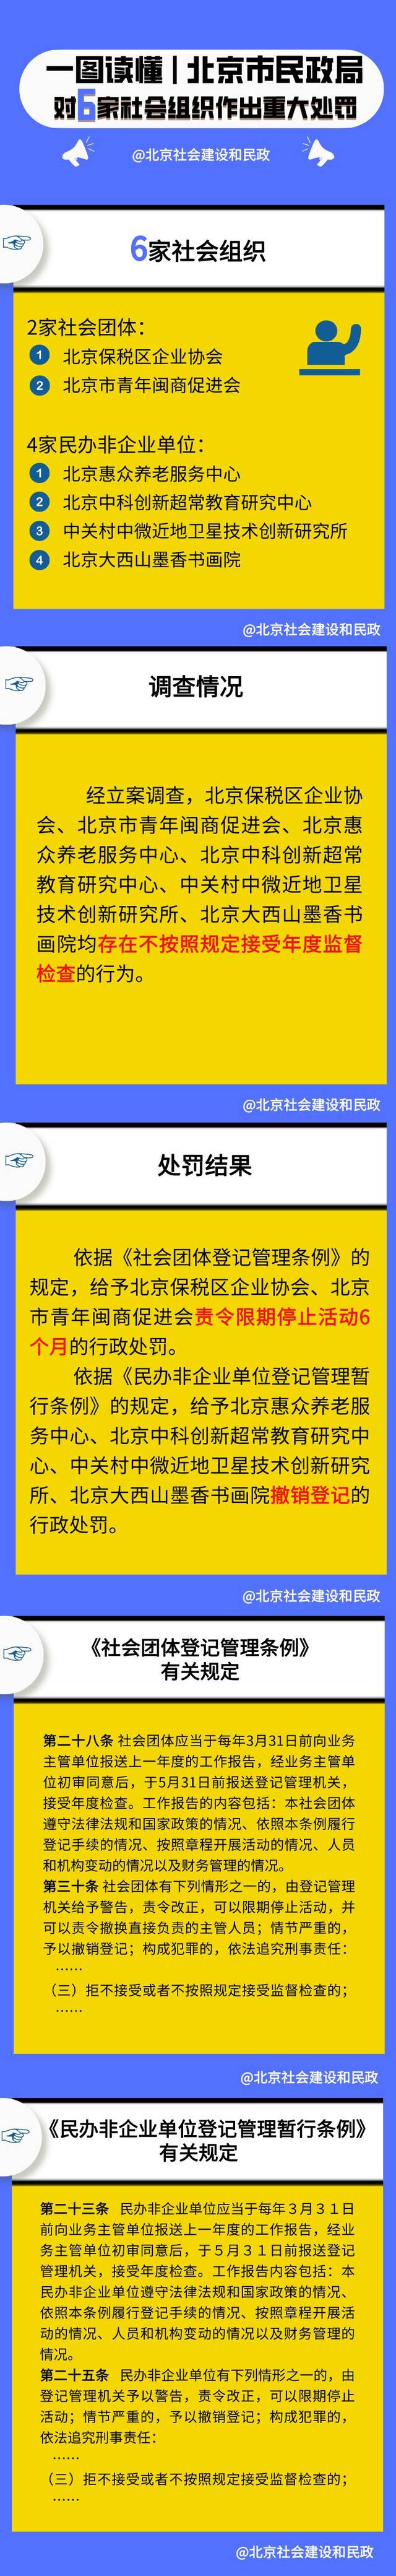 北京市民政局依法对6家社会组织作出重大处罚